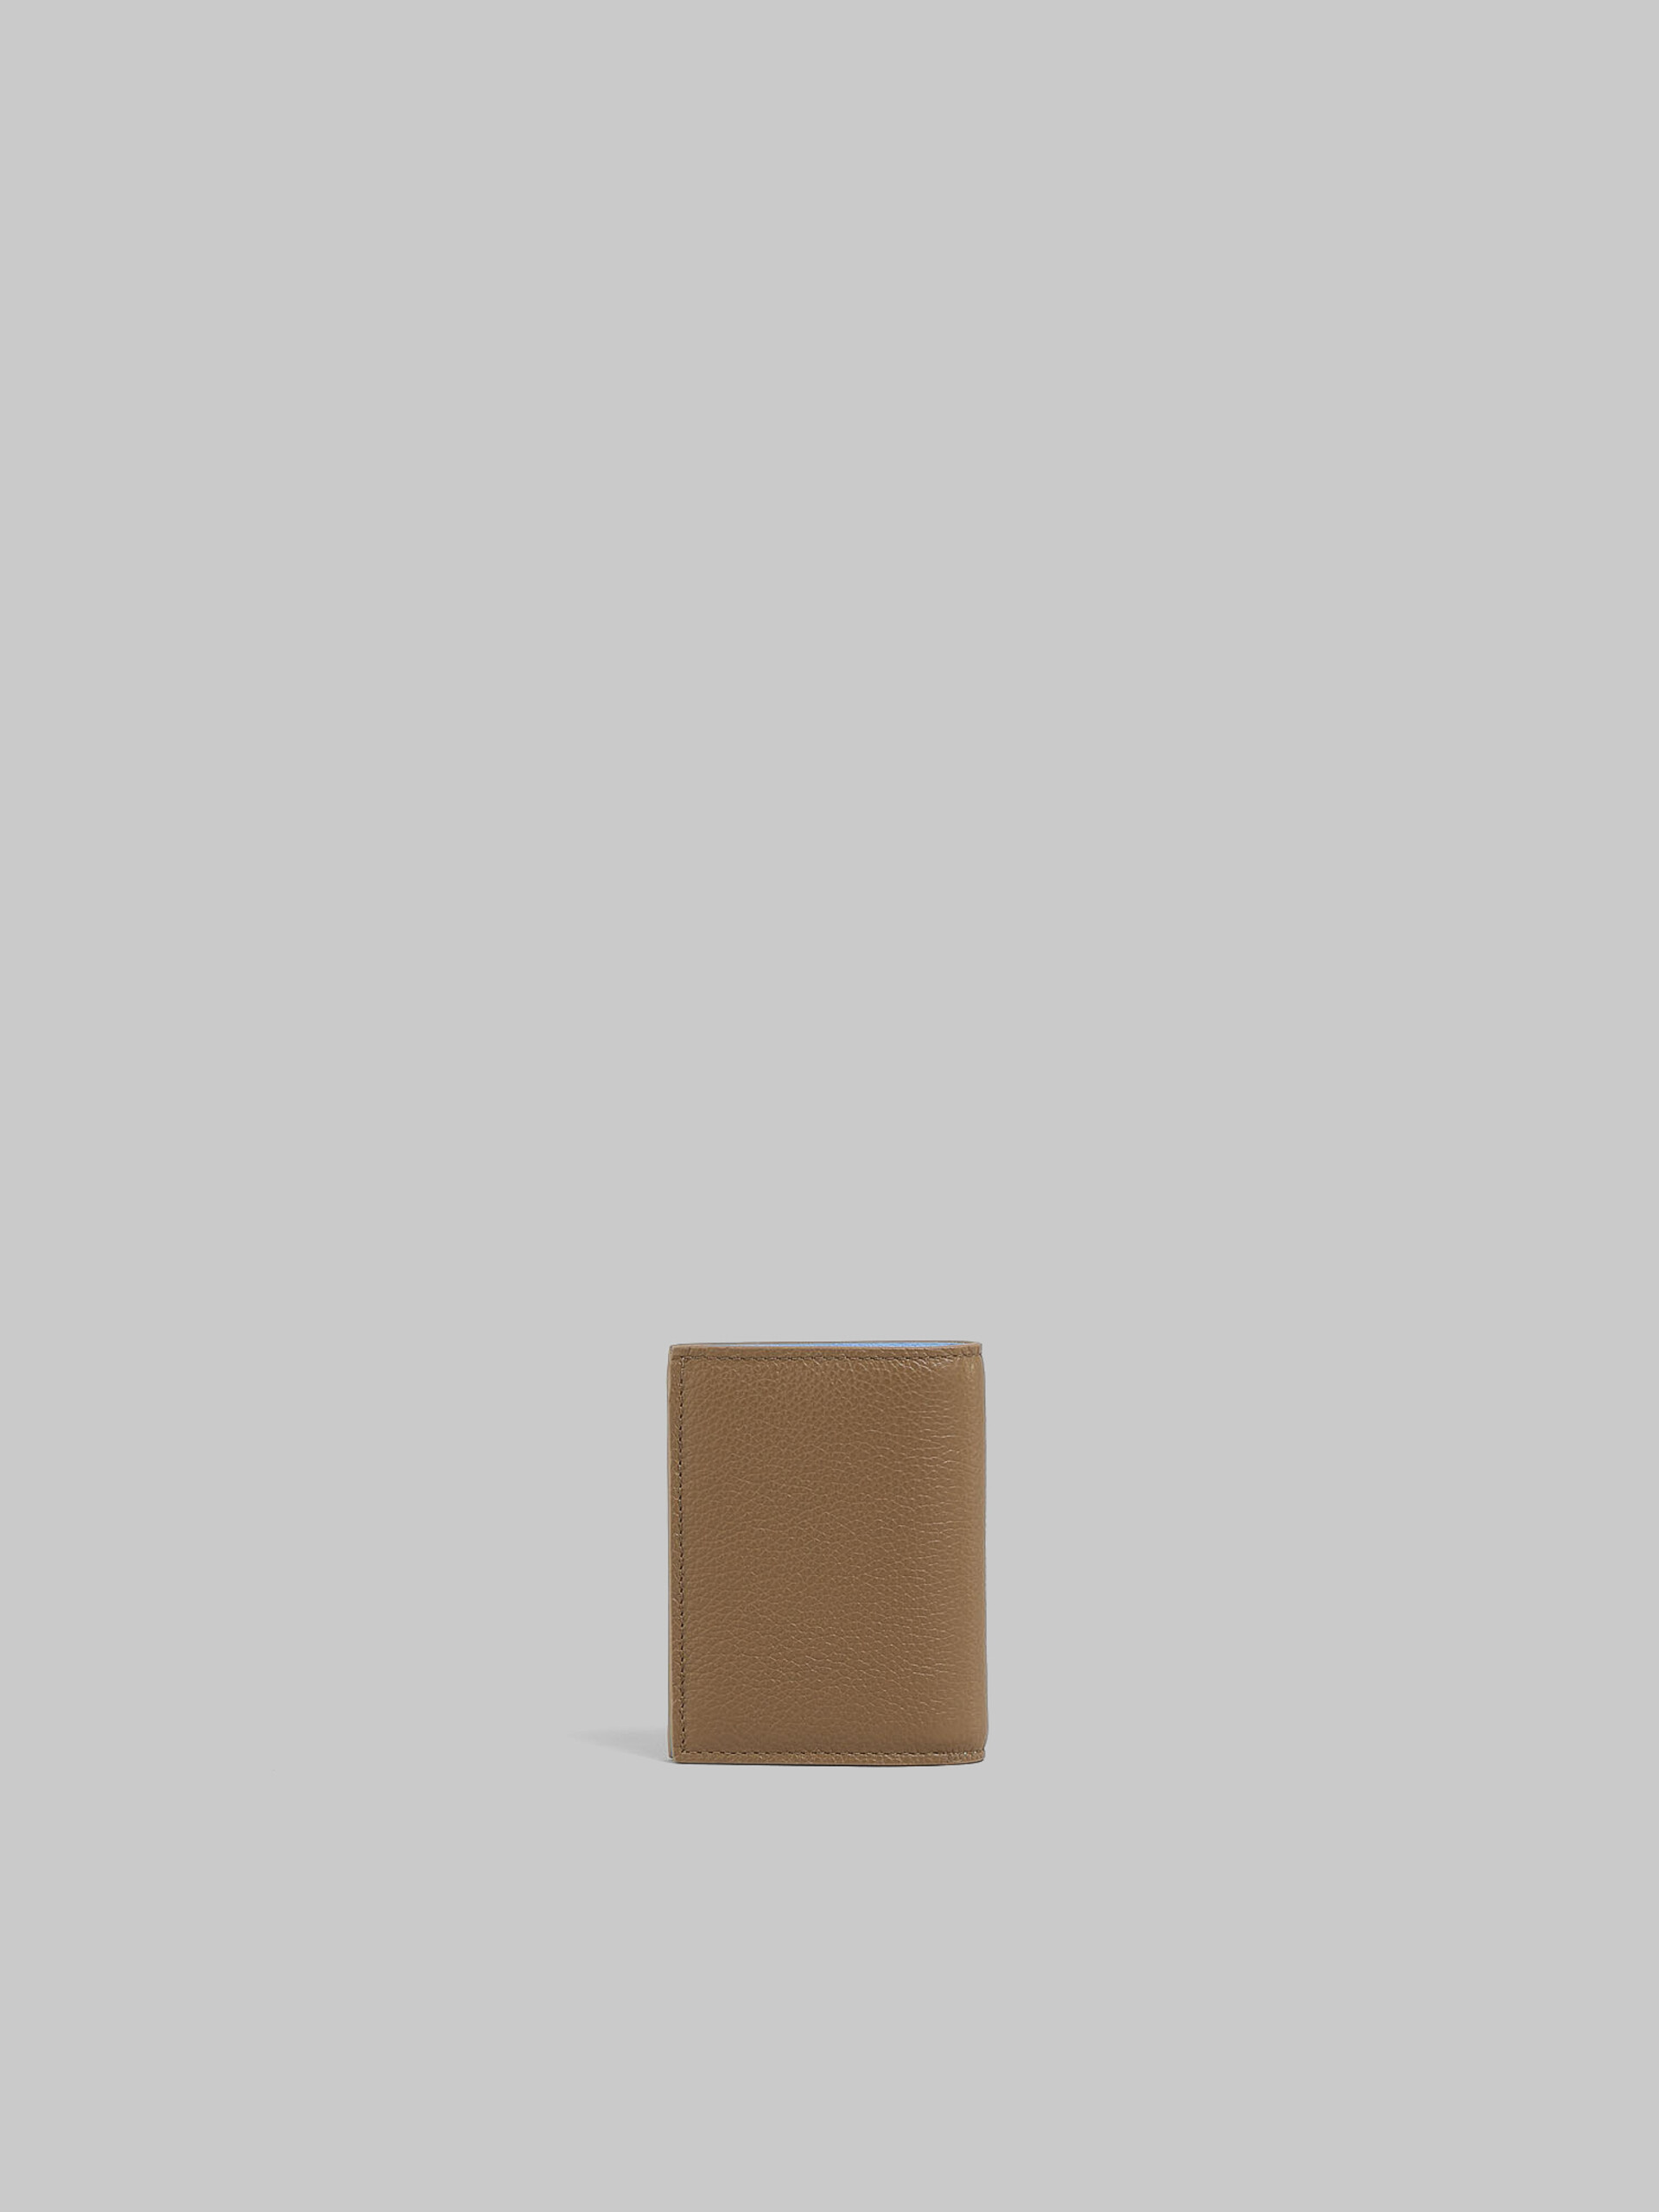 ブラウン レザー製 二つ折りウォレット、マルニメンディング - 財布 - Image 3